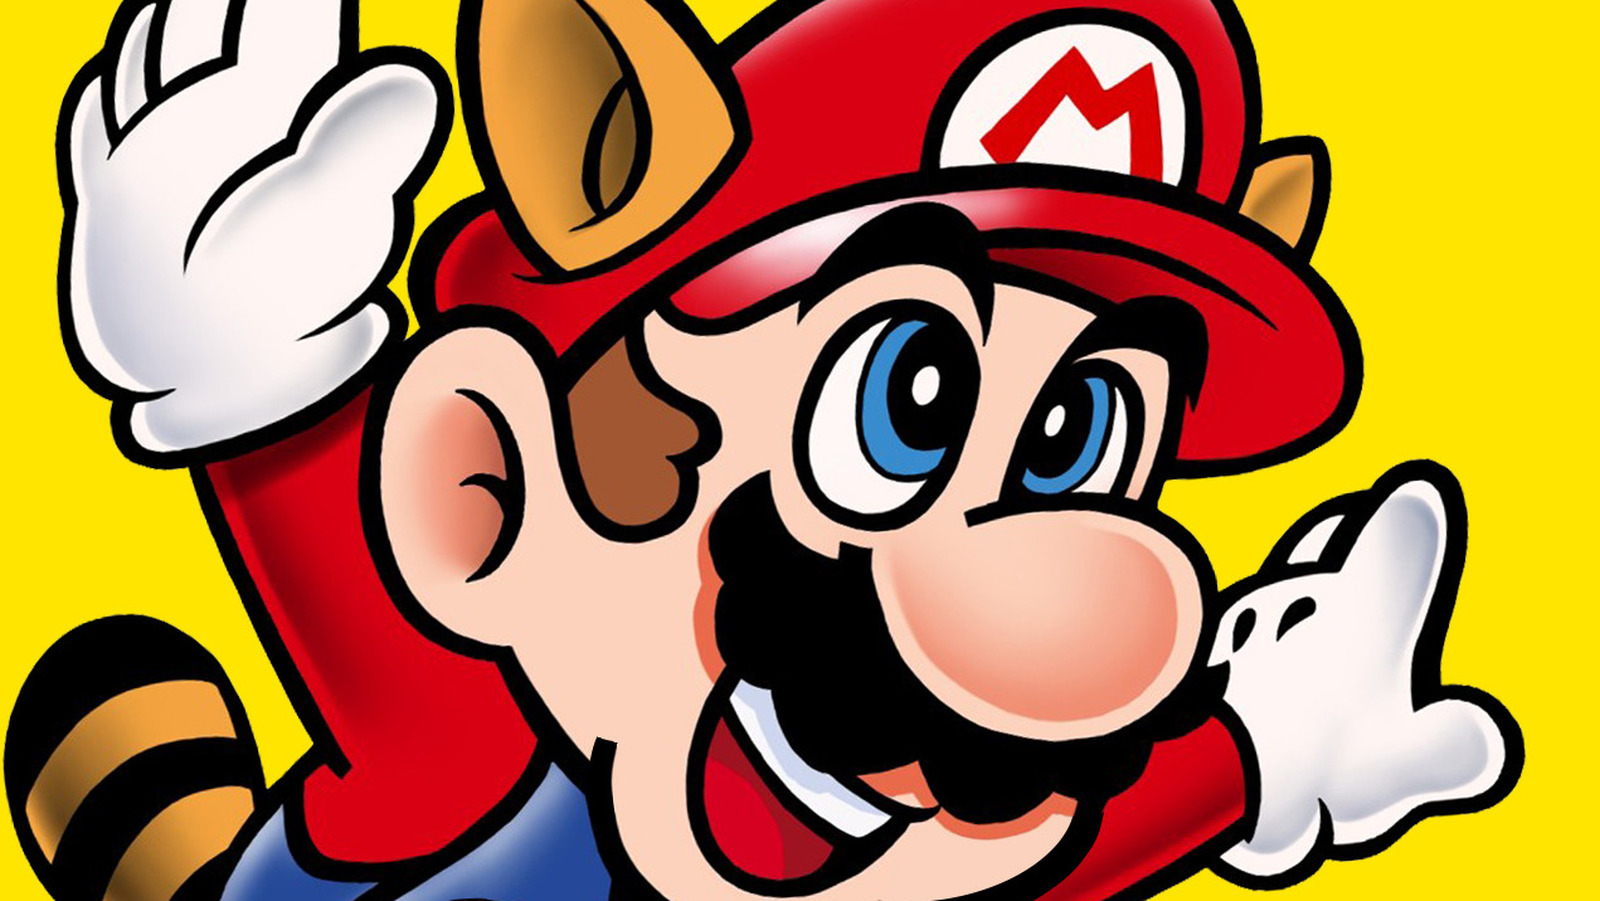 Mario brothers. Марио. Mario 1. Марио БРОС 3. Mario 1994.